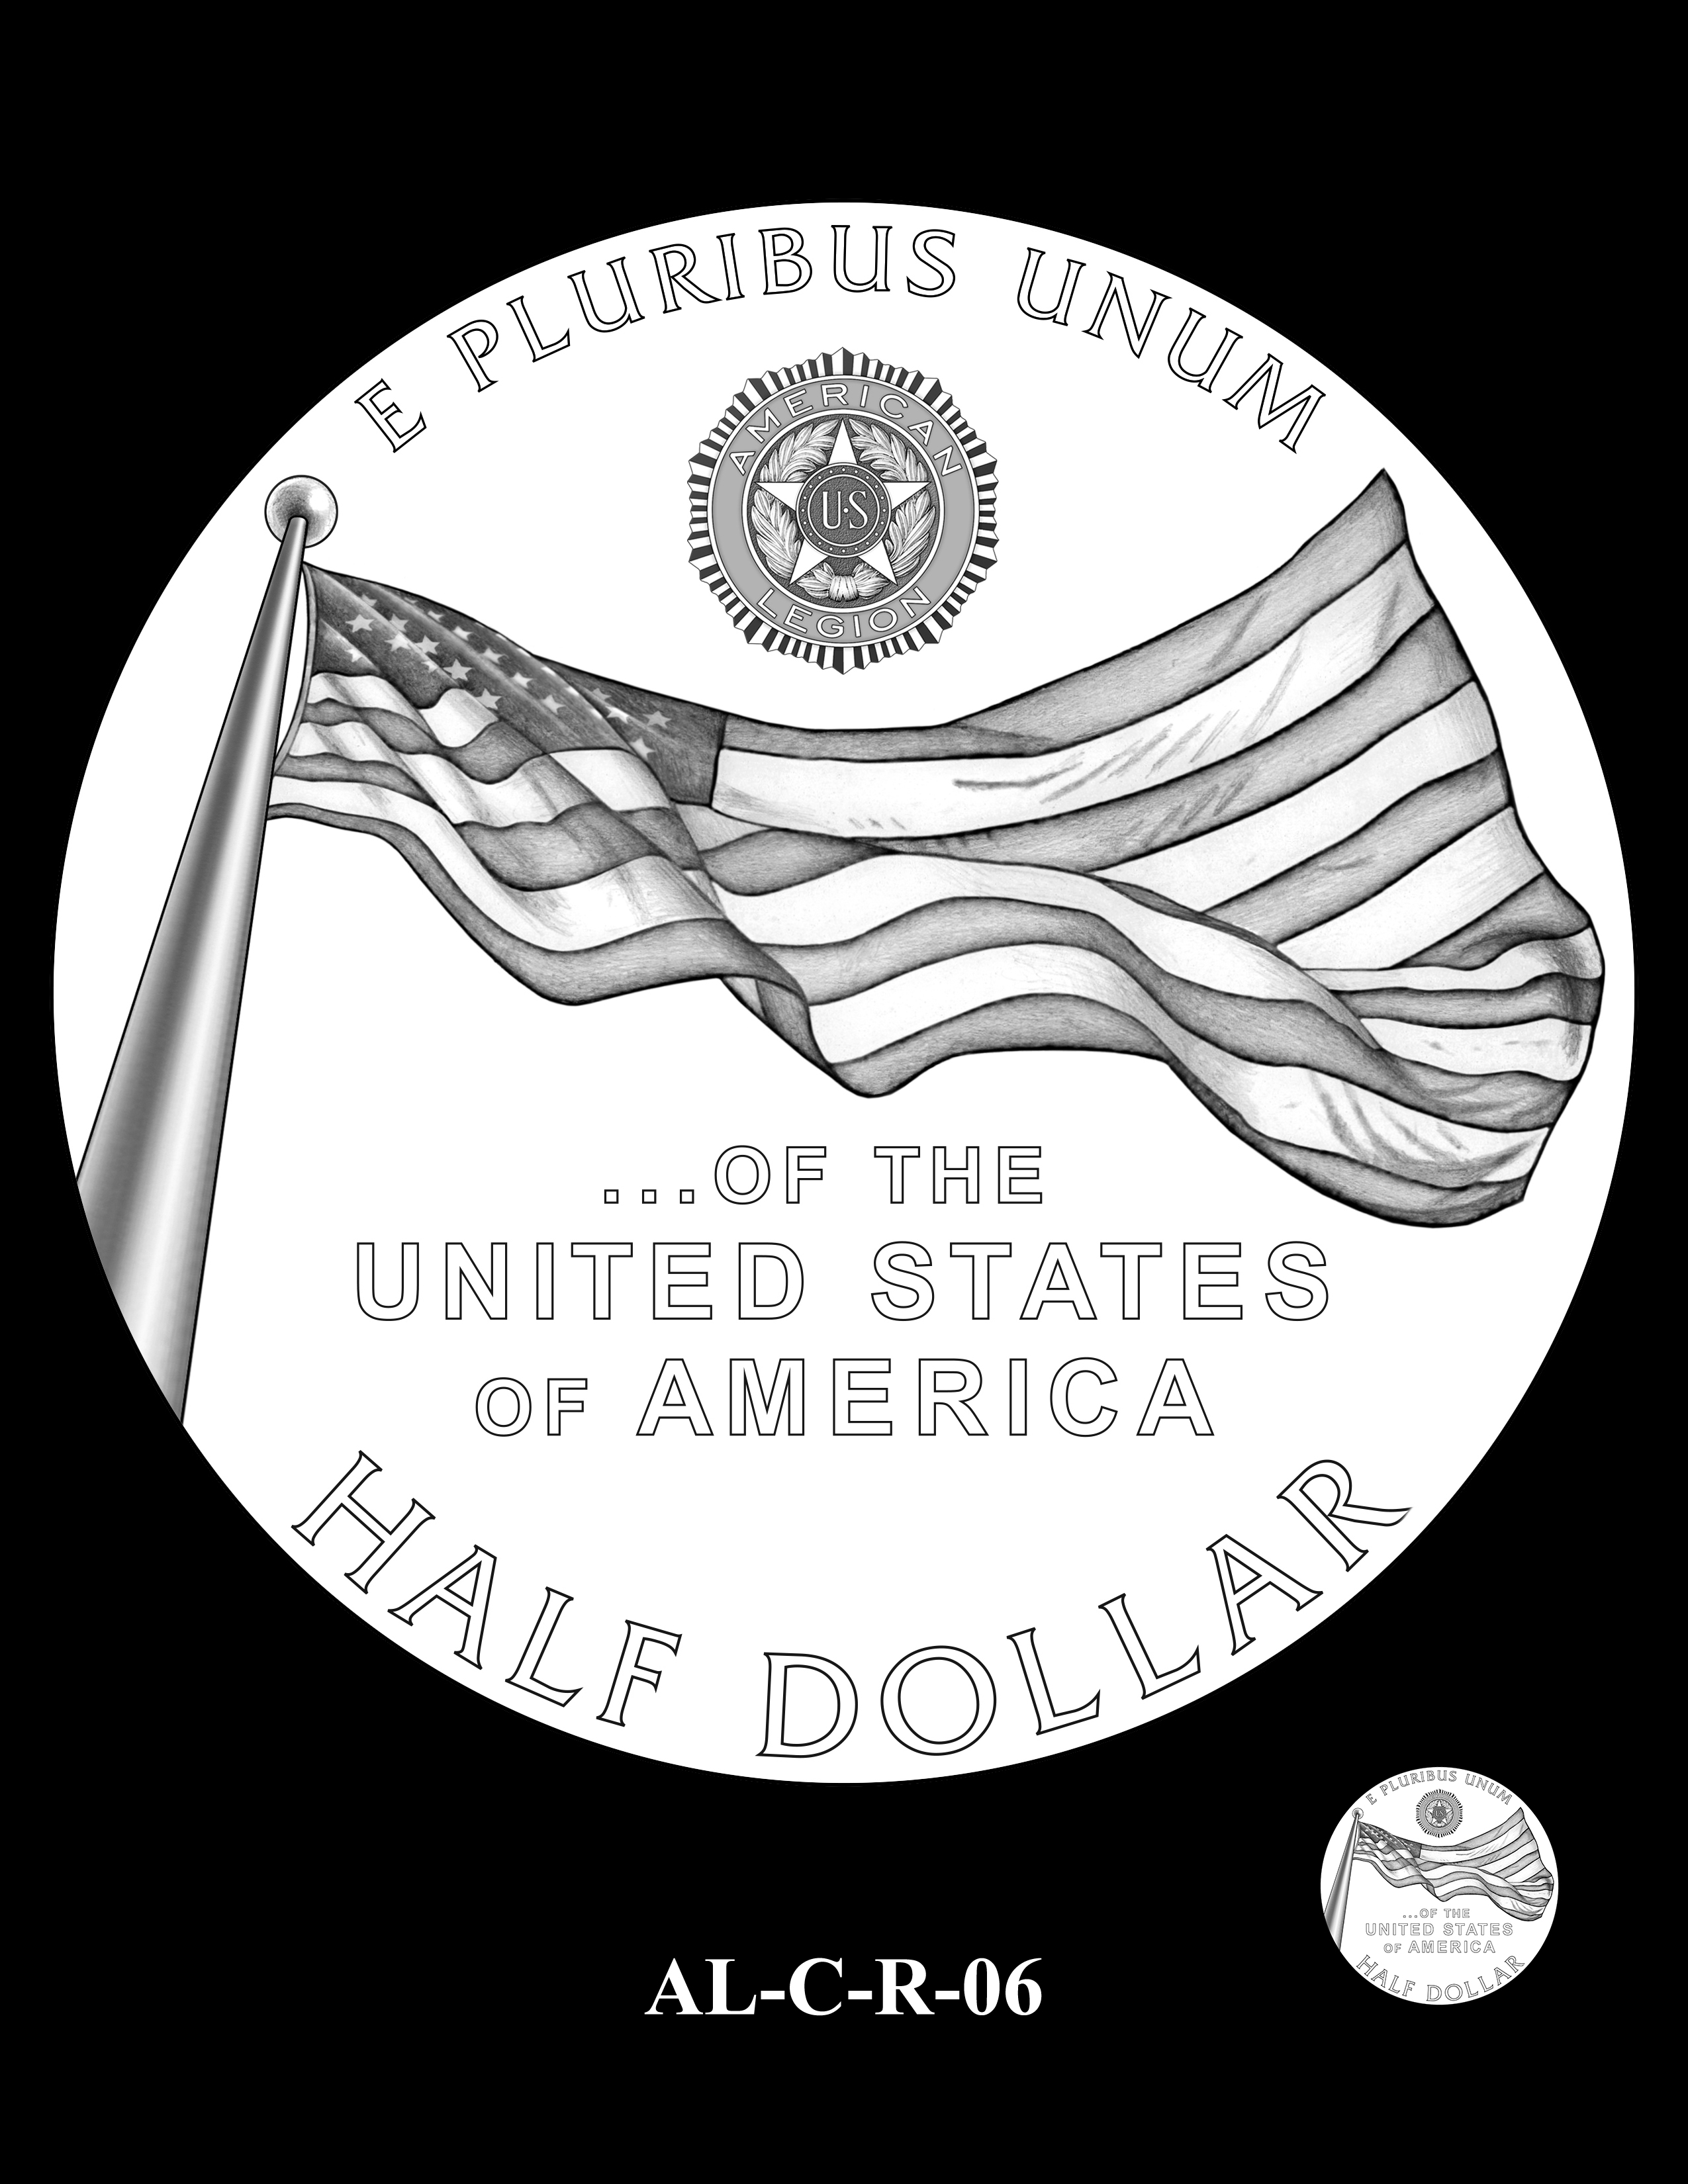 AL-C-R-06 -- 2019 American Legion 100th Anniversary Commemorative Coin Program - Clad Reverse